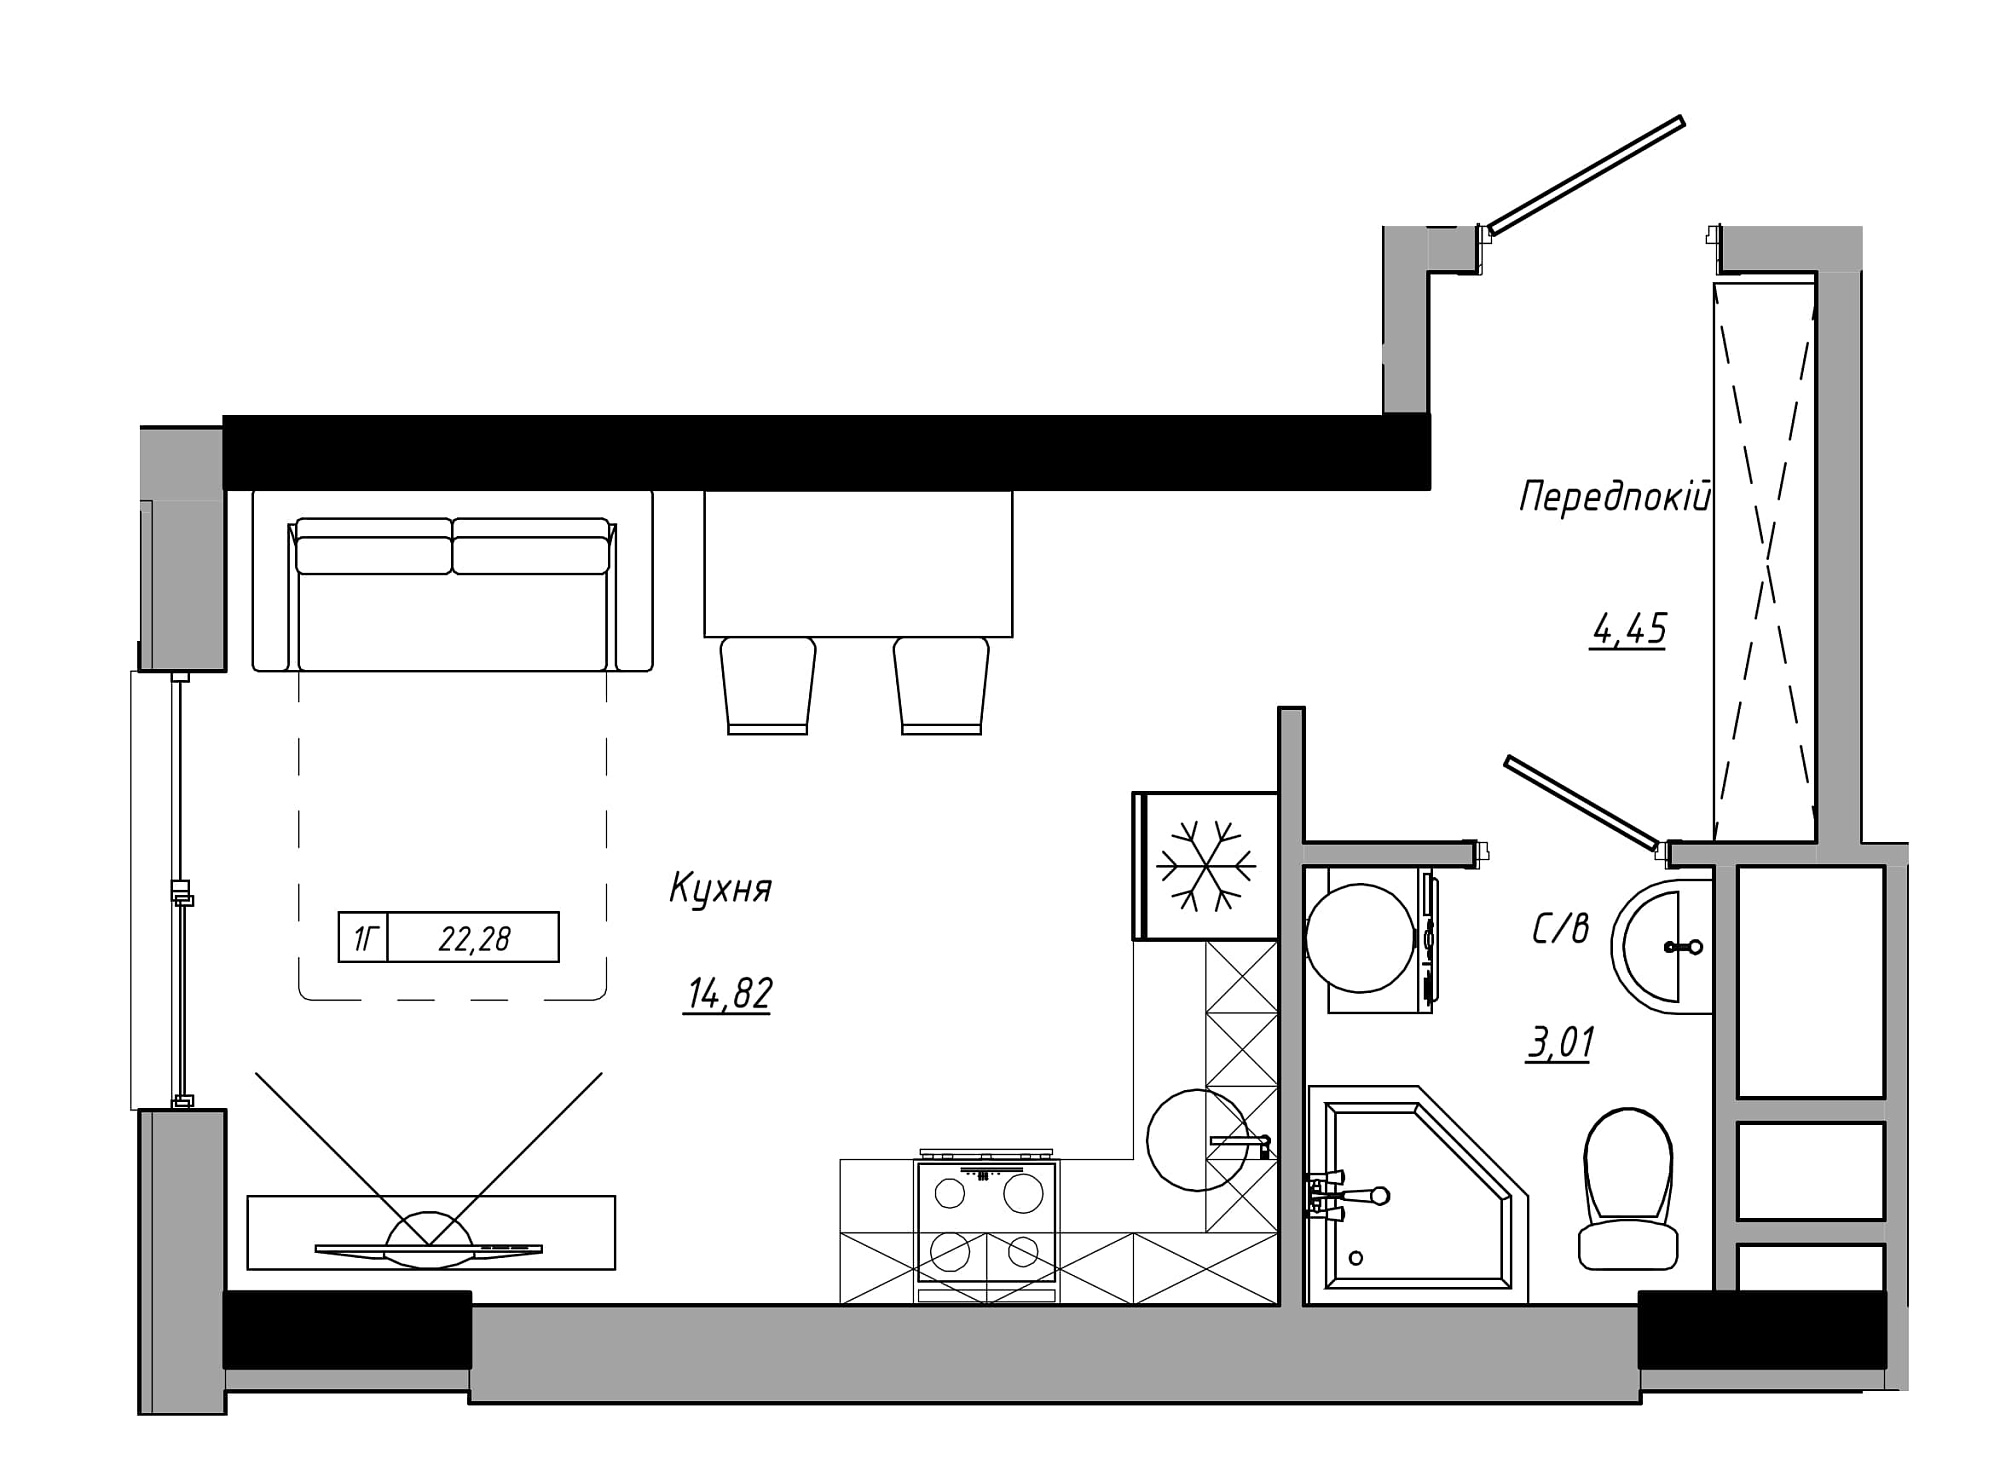 Планування Smart-квартира площею 22.28м2, AB-21-05/00005.